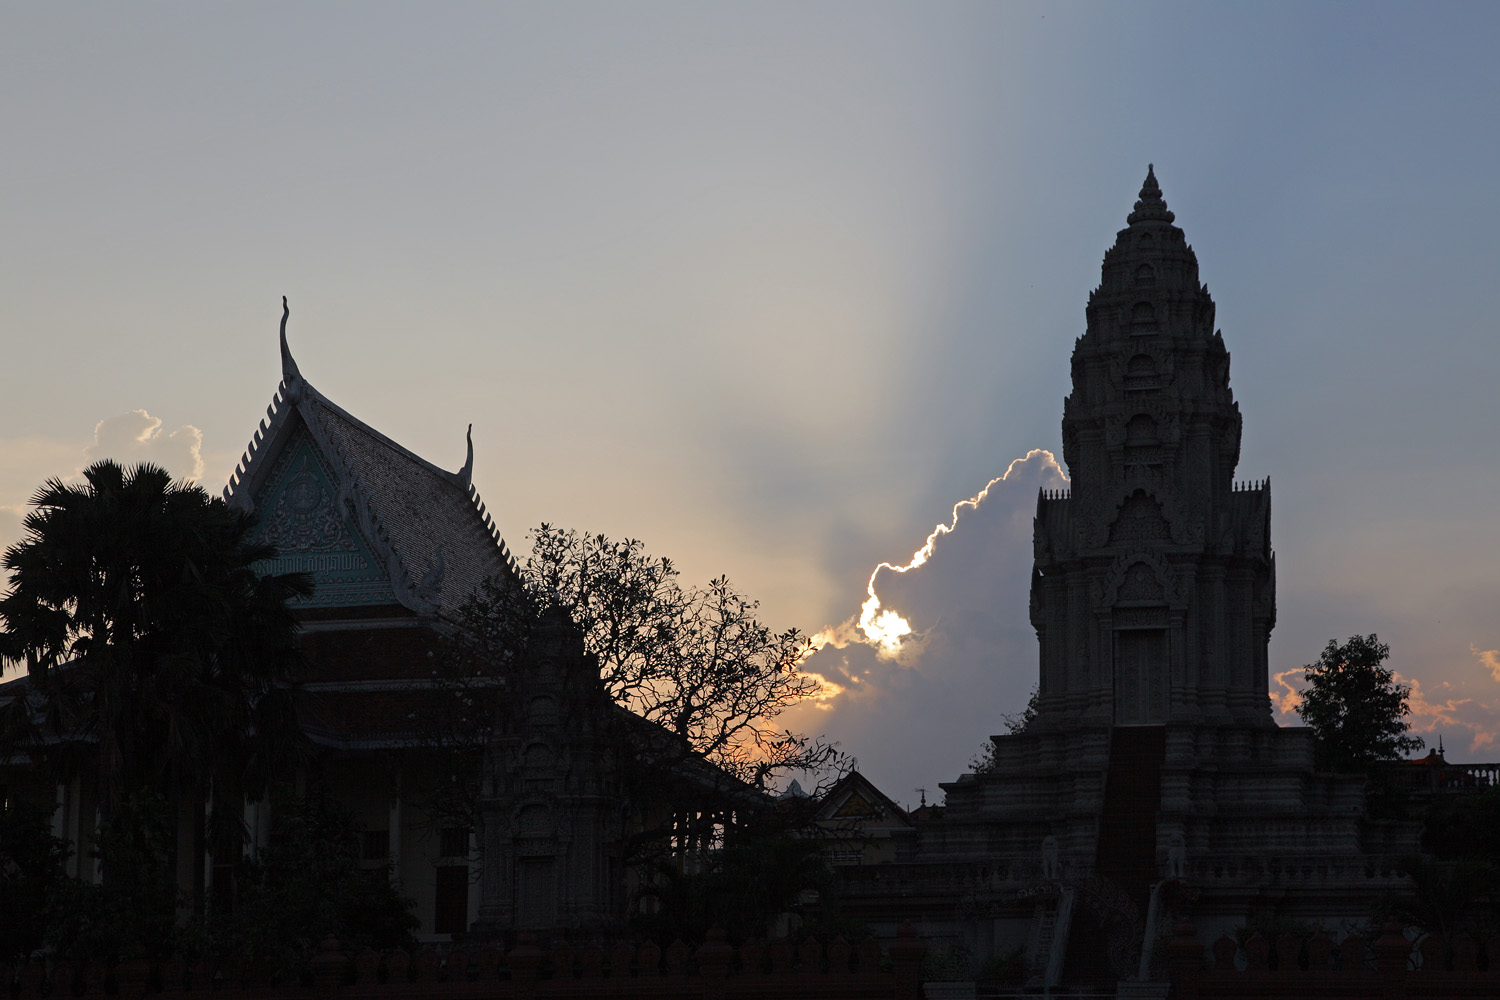 bill-hocker-capital-temple-royal-palace-phnom-penh-cambodia-2013